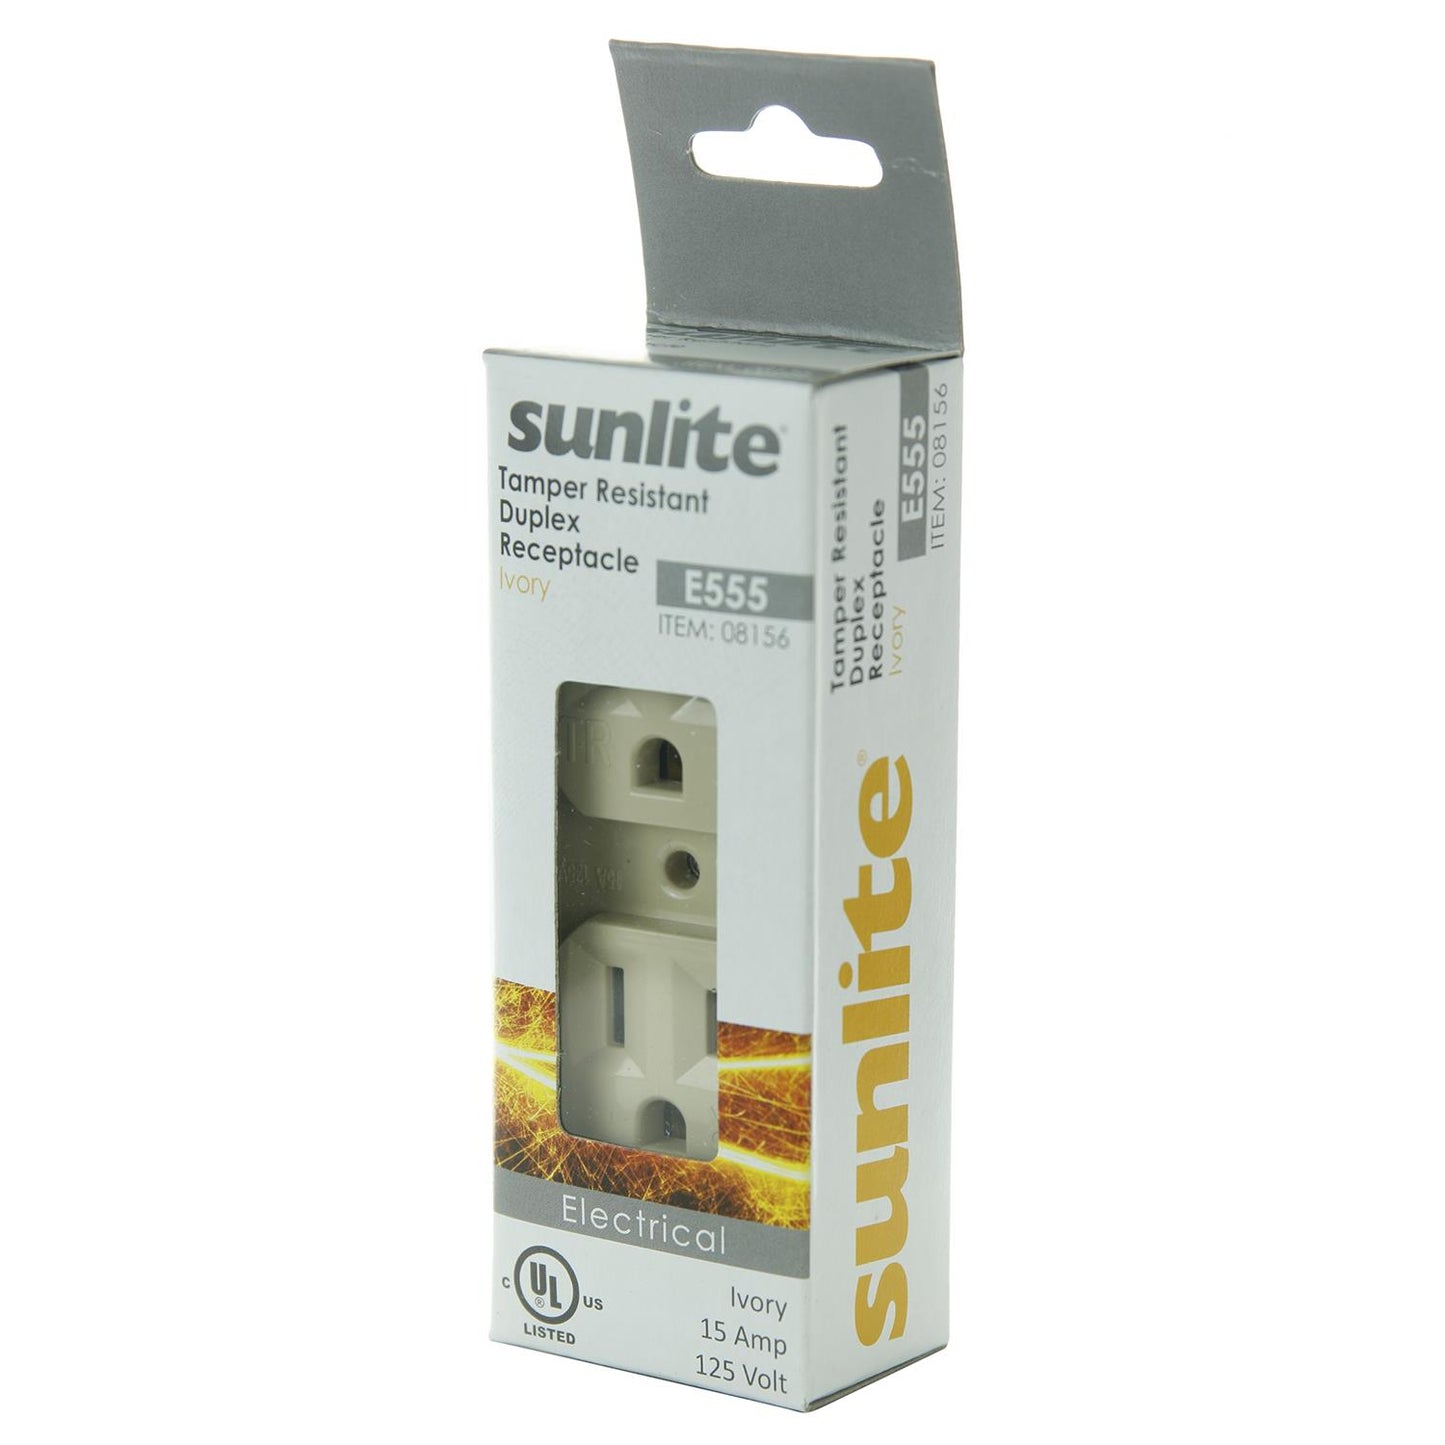 Sunlite E555/IV 15A Tamper Resistant Deplex Receptacle, Ivory